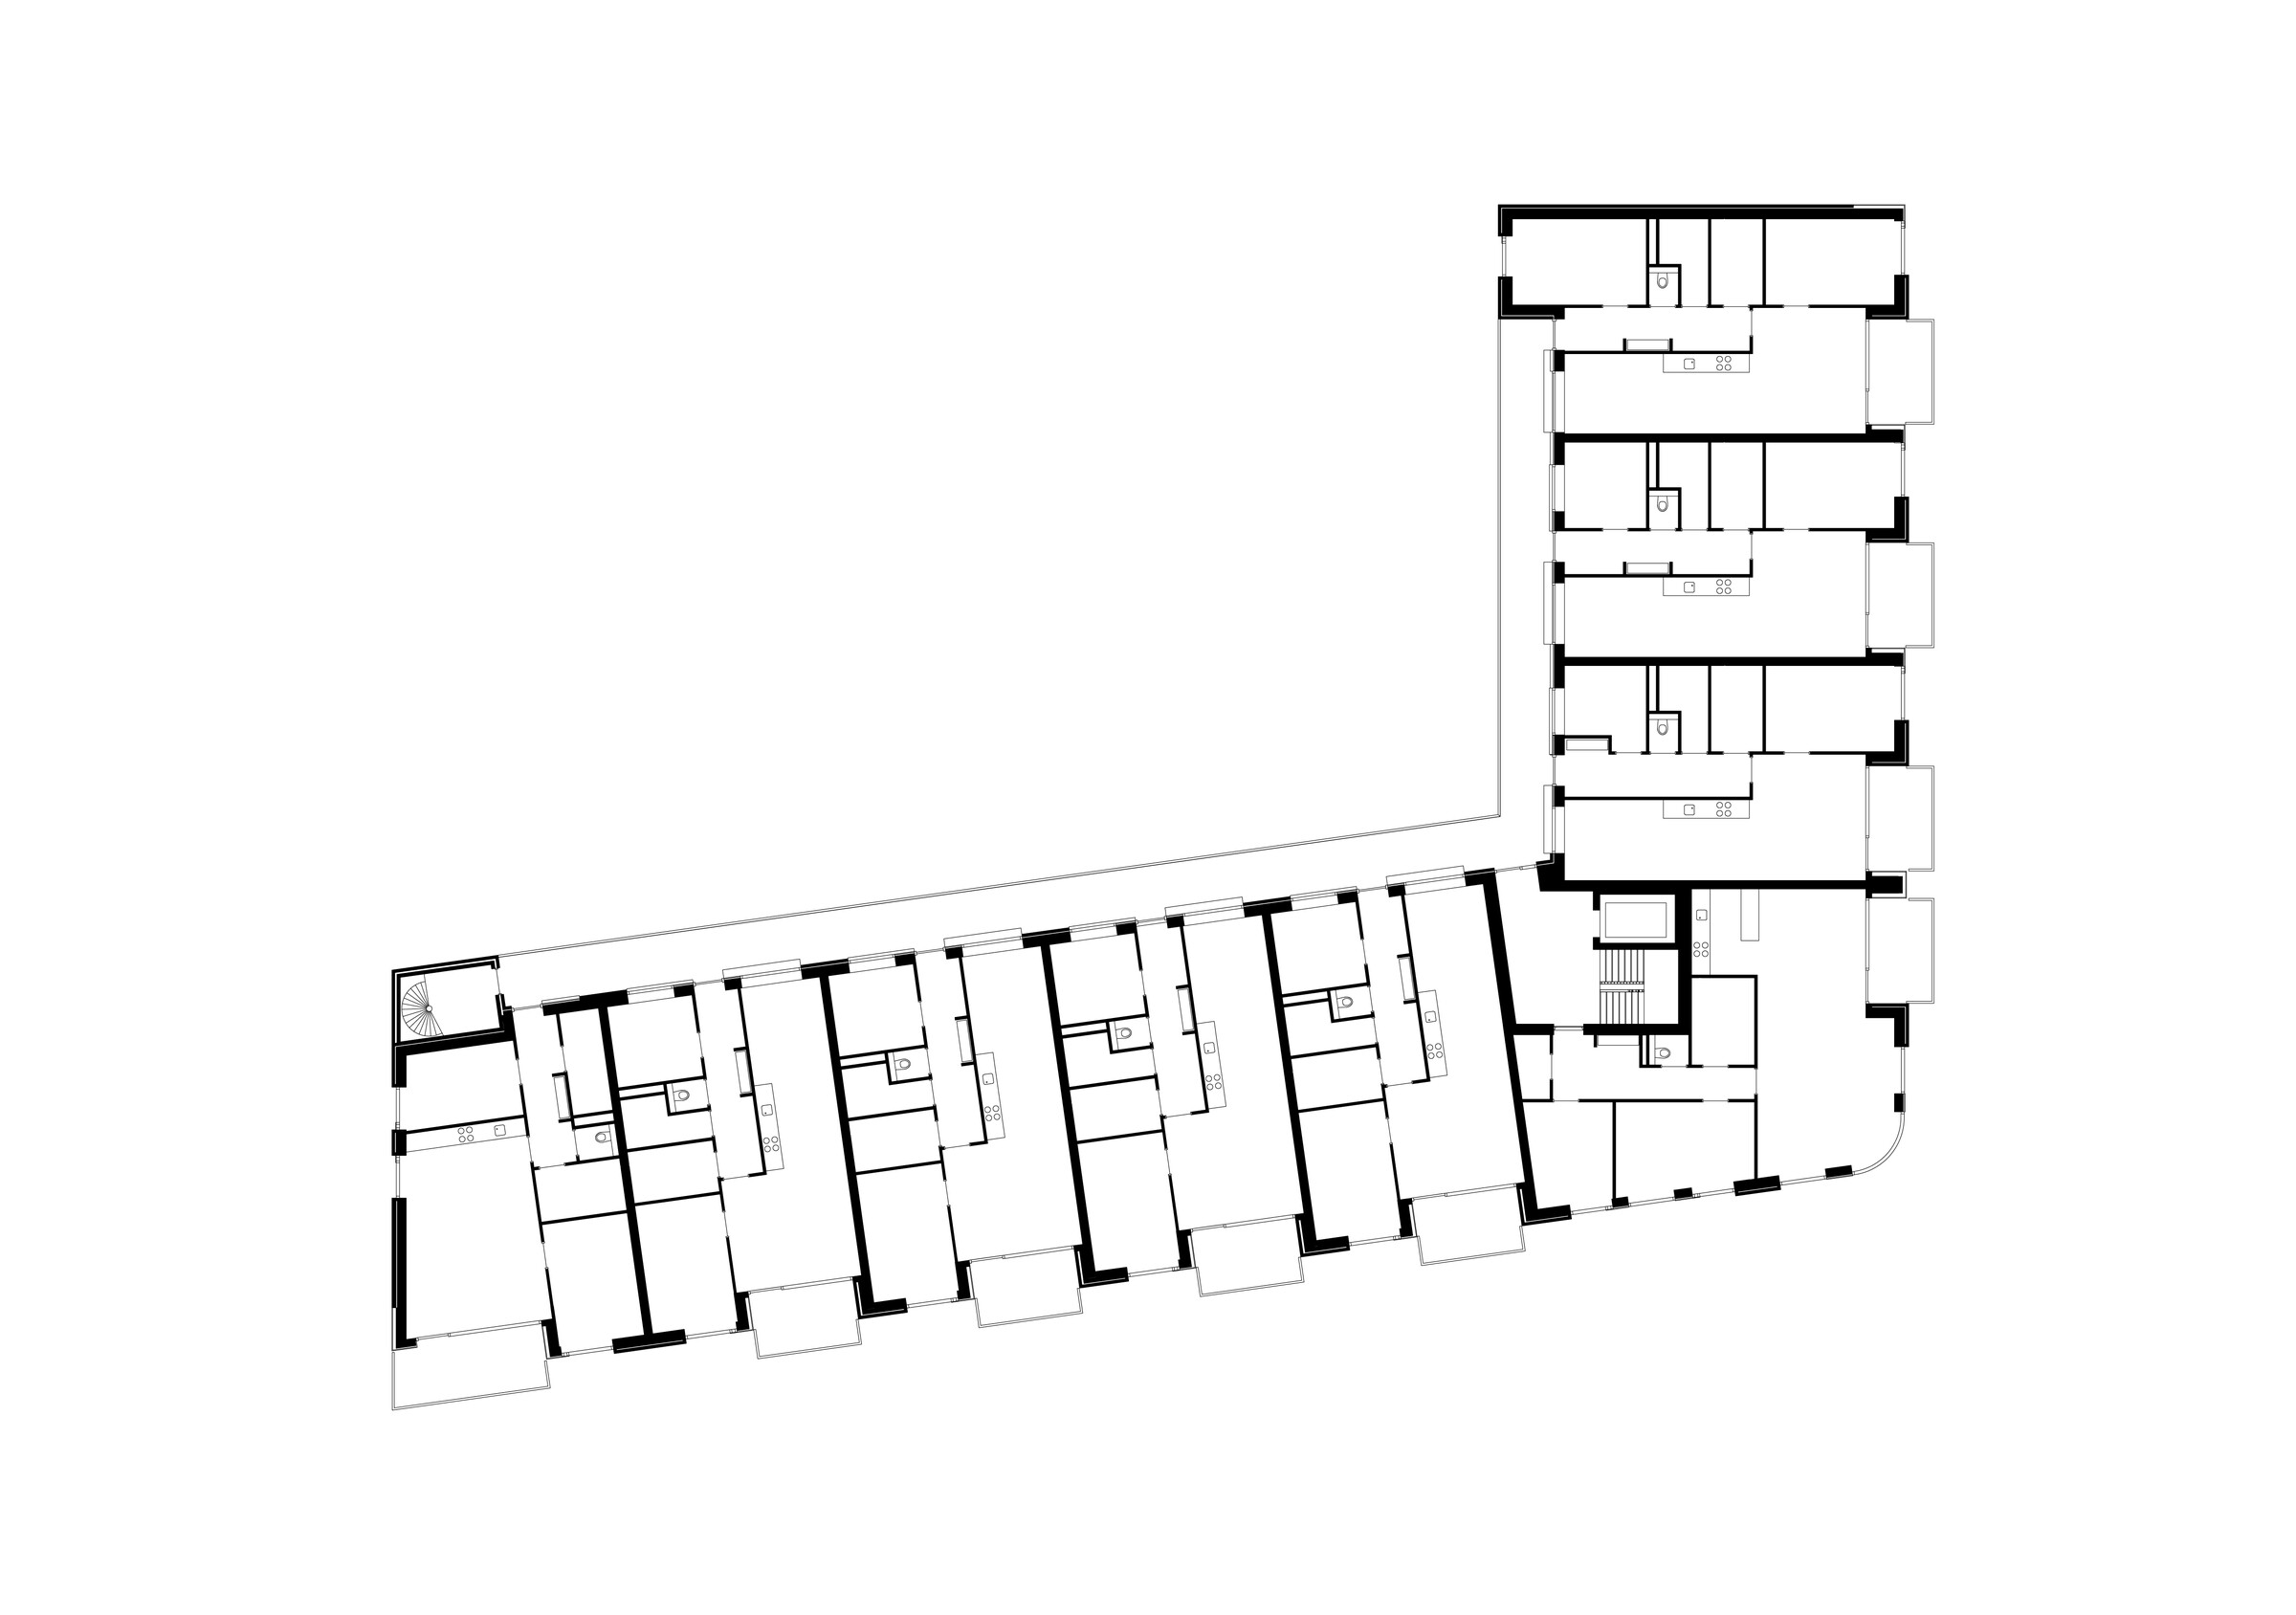 04-Zecc_Architecten-Rijnvliet-apartments-floor_plan.jpg